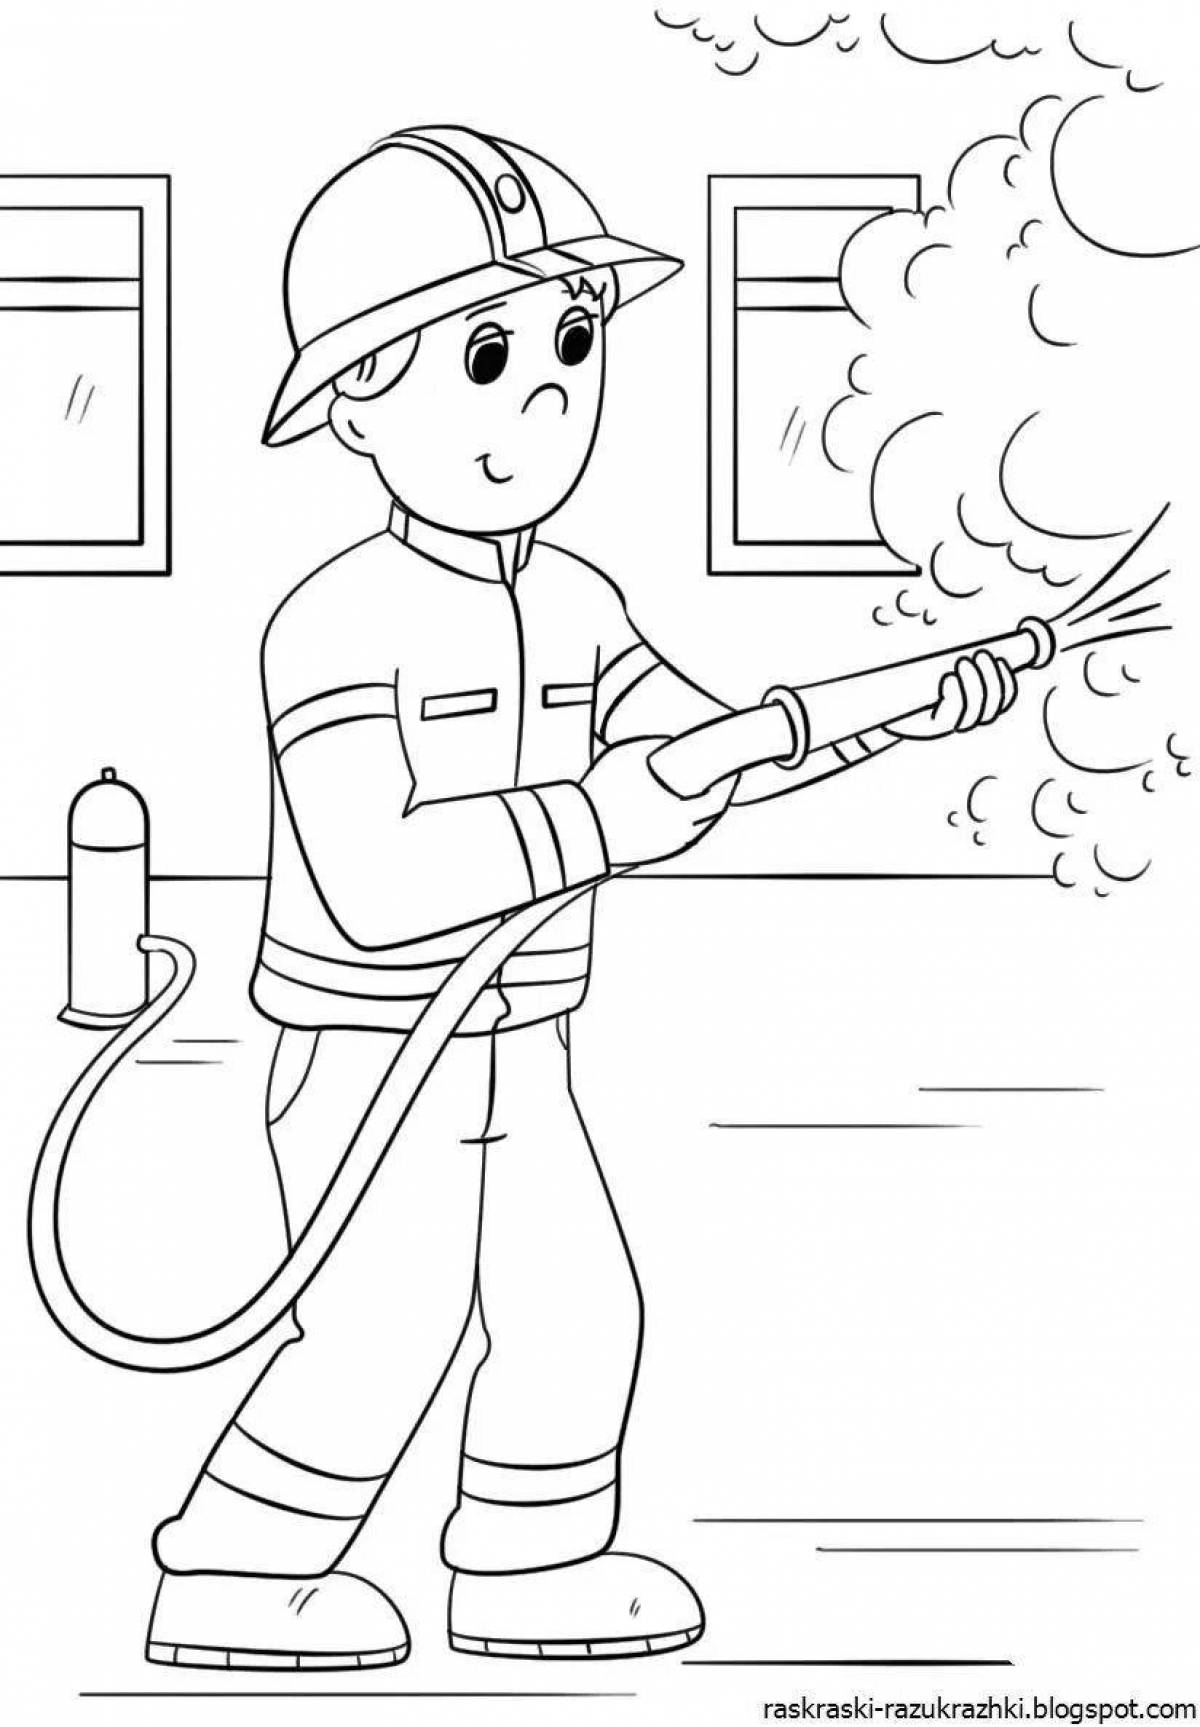 Восхитительный рисунок пожарного для детей